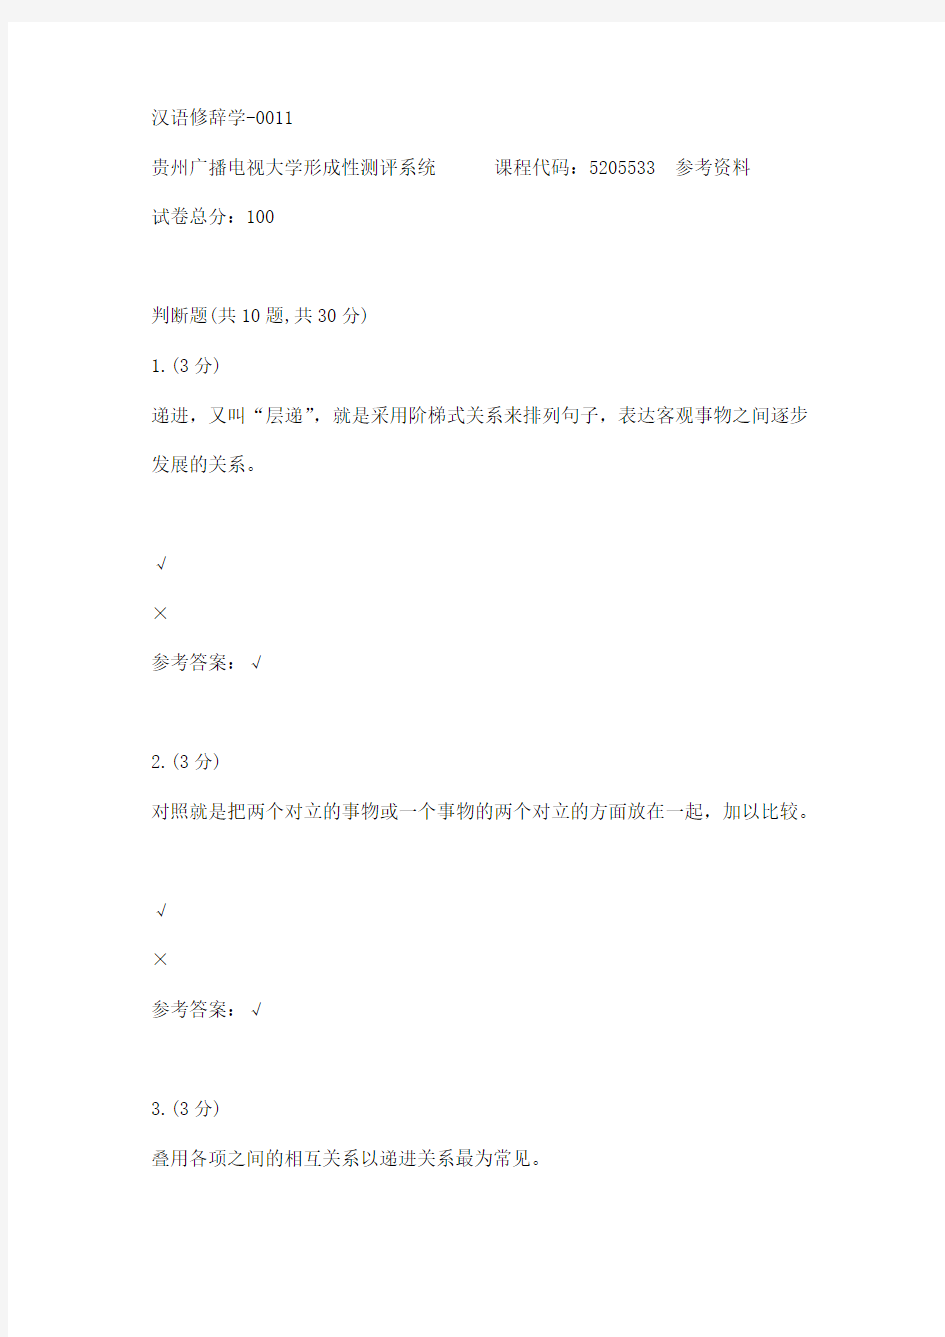 【贵州电大】汉语修辞学-0011辅导答案